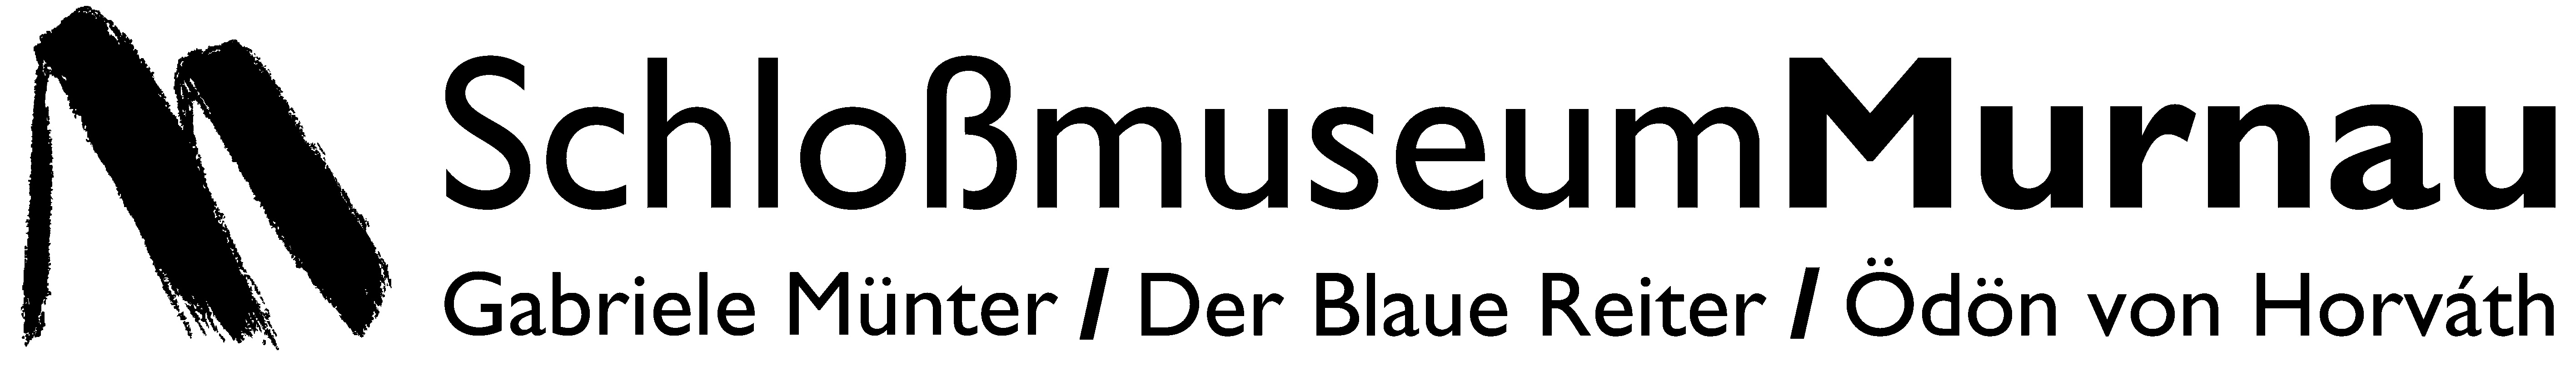 Murnau_logo_SCHWARZ_aktuell